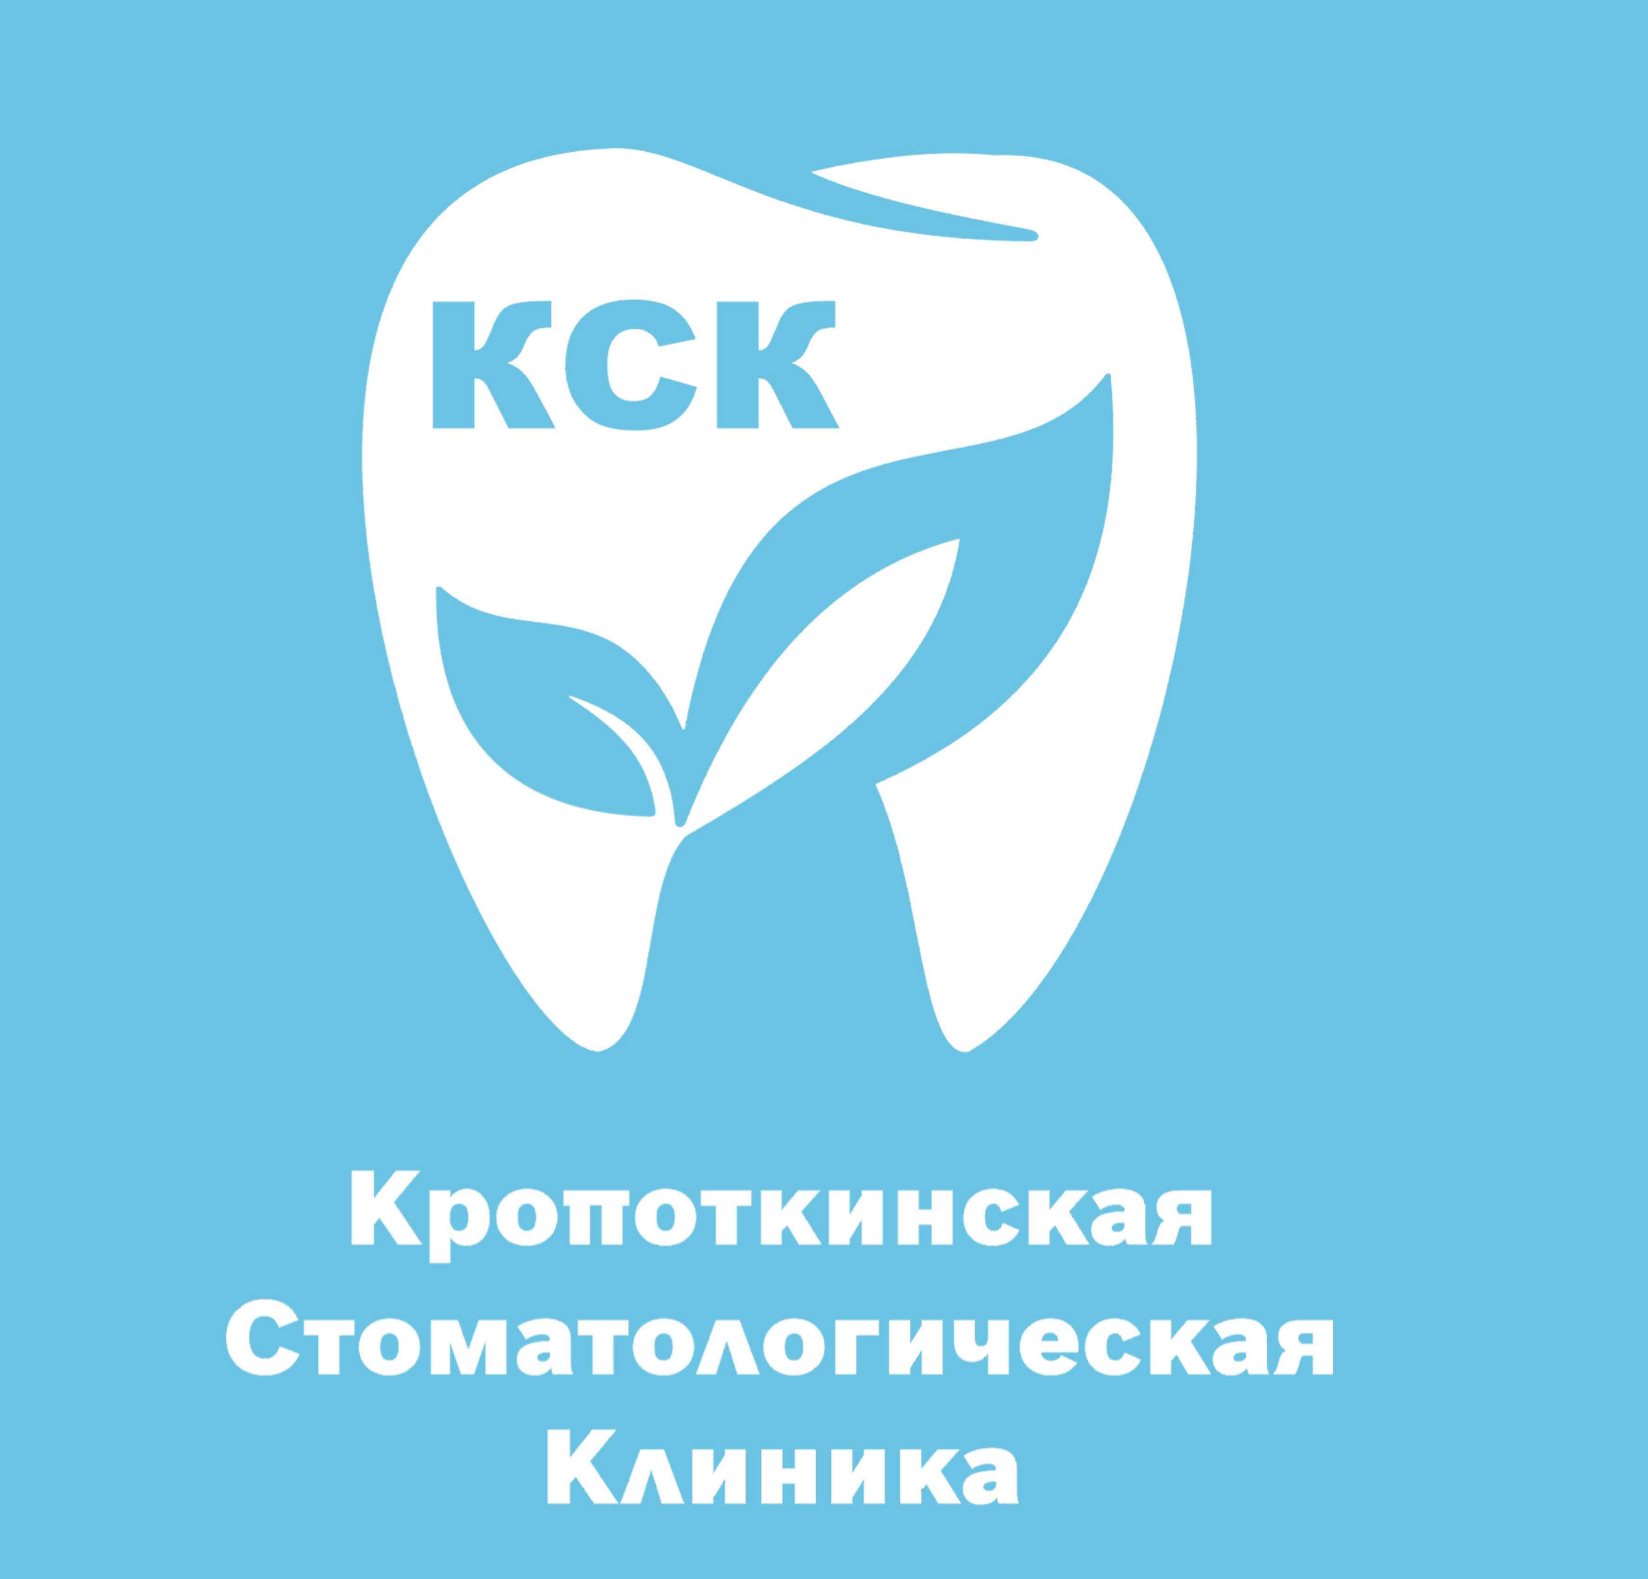 Визитка стоматологической клиники. Логотип стоматологической клиники. Карта стоматологических клиник в Москве. Визитки стоматология иностранные.